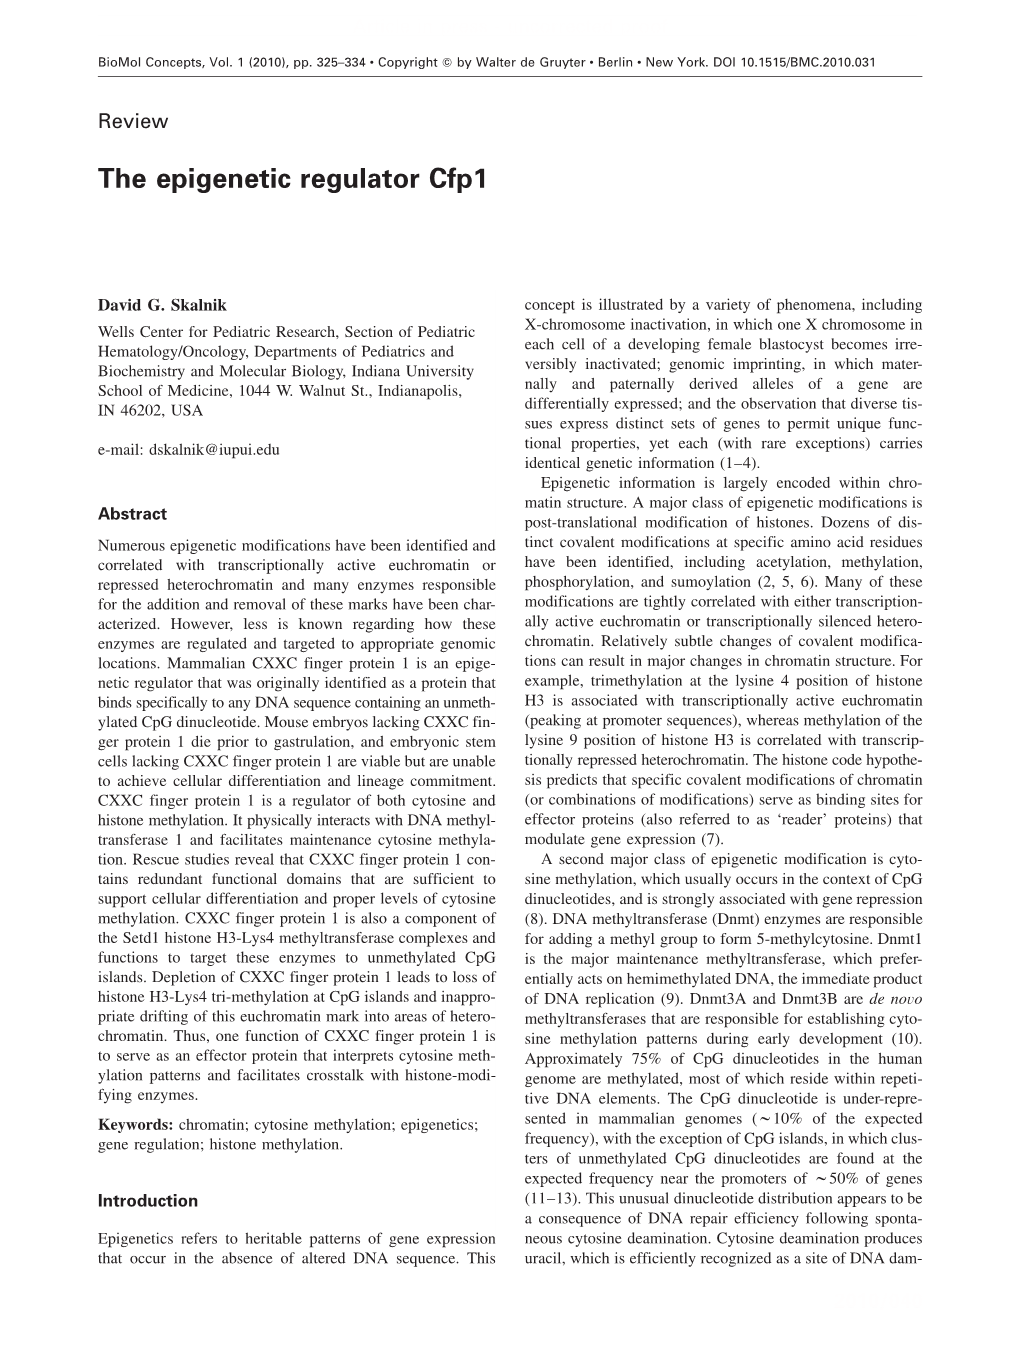 The Epigenetic Regulator Cfp1